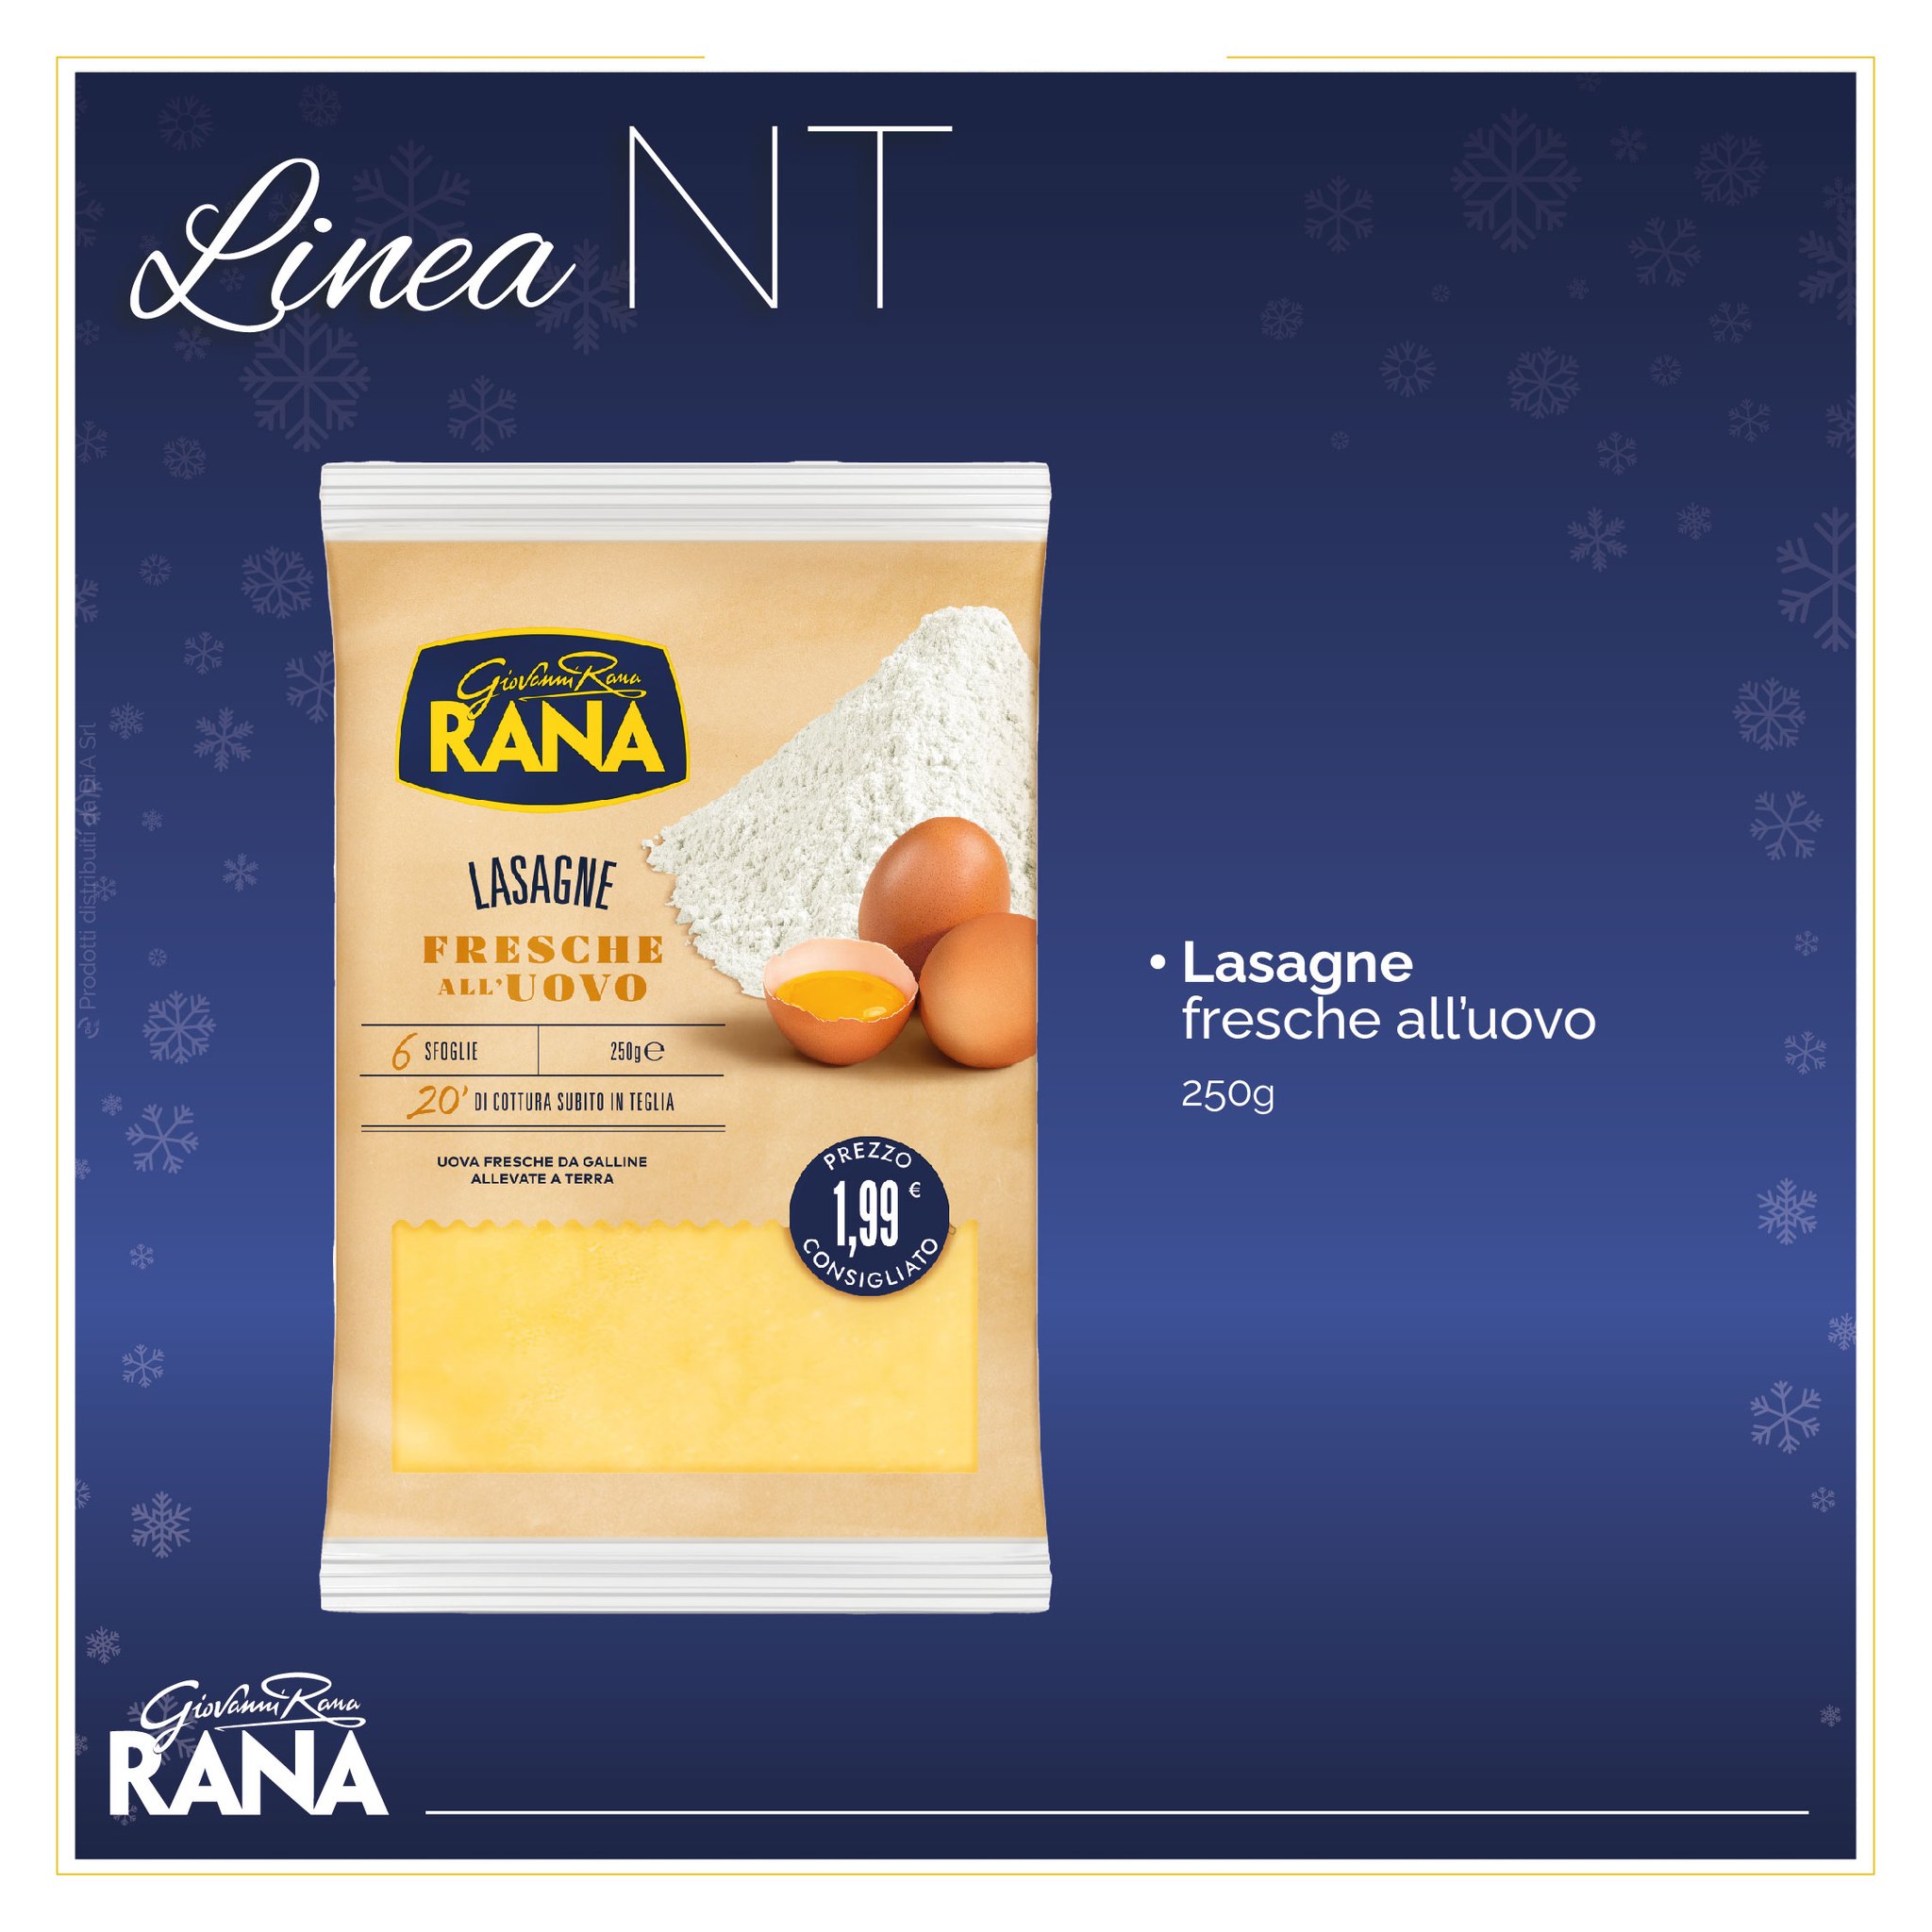 Lasagne fresche all'uovo 250g. Scopri il meglio della pasta fresca Giovanni Rana Linea NT. In esclusiva su Dialivery di Dia Srl